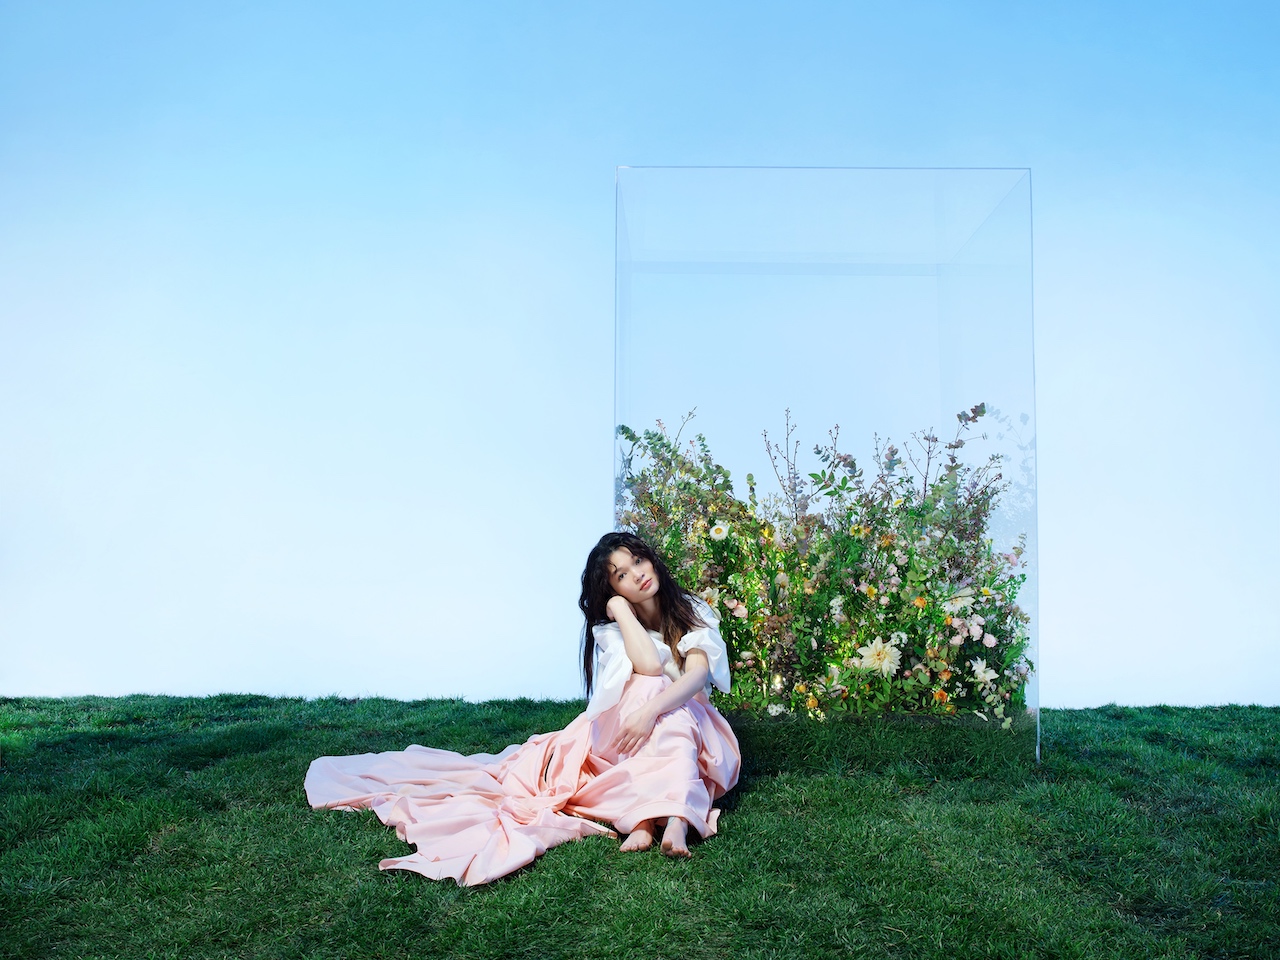 苏运莹全新创作单曲《萤火》今日首发  献上温暖冬季问候“你好吗？”